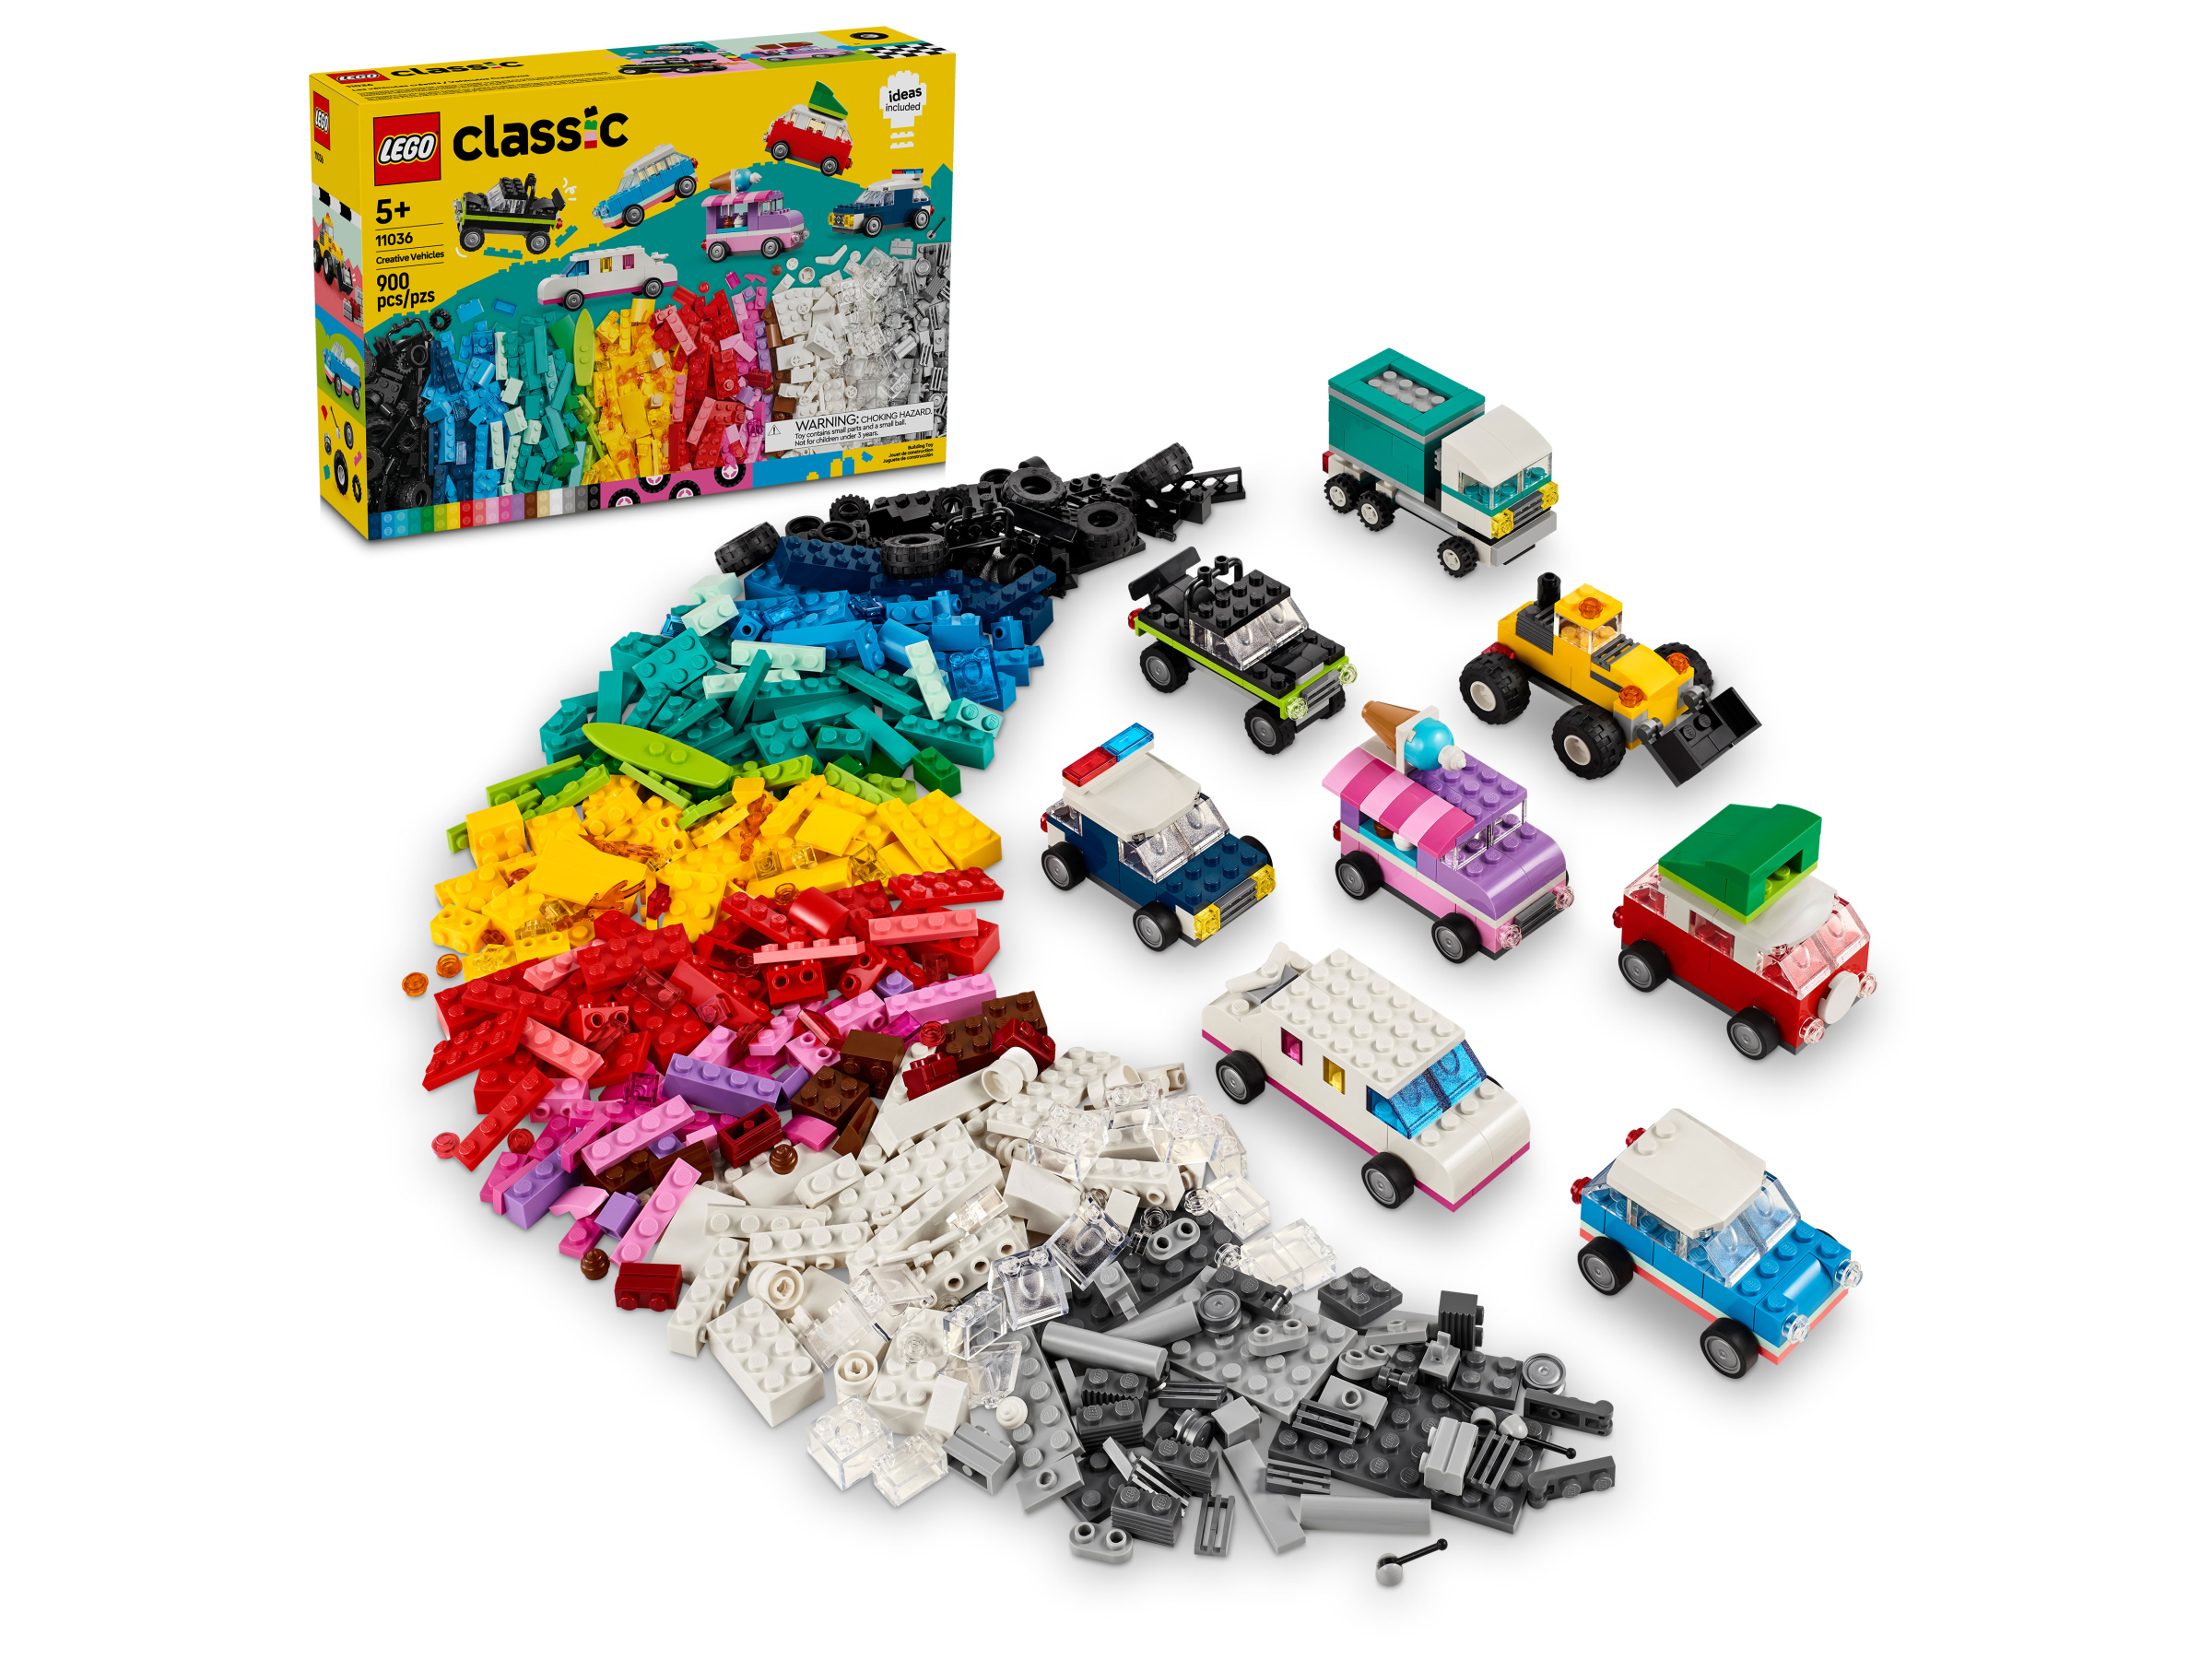 Armable Lego Caja de Ladrillos Creativos Mediana Lego